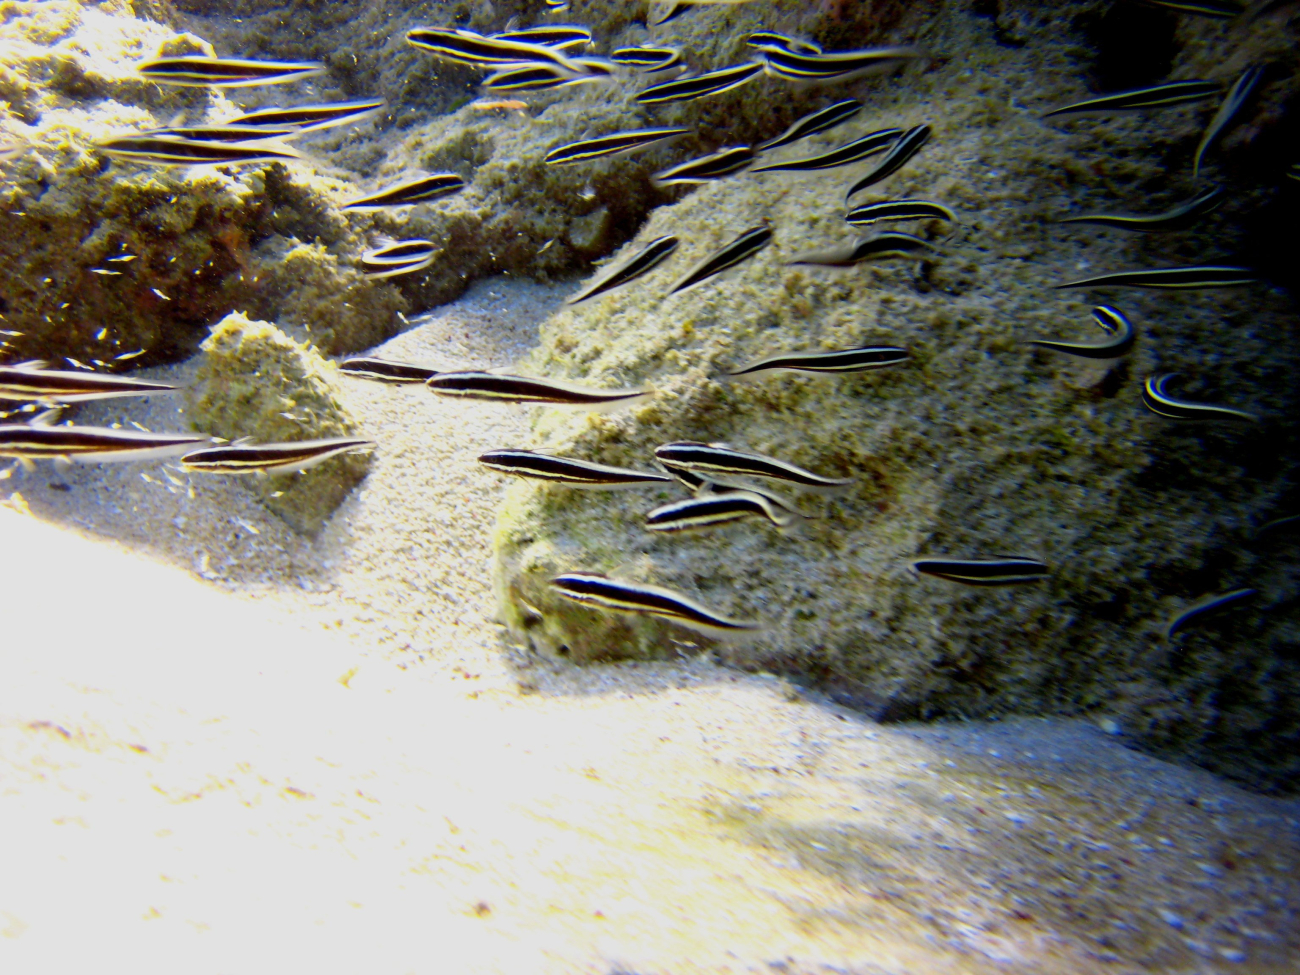 Striped catfish (Plotosus lineatus)